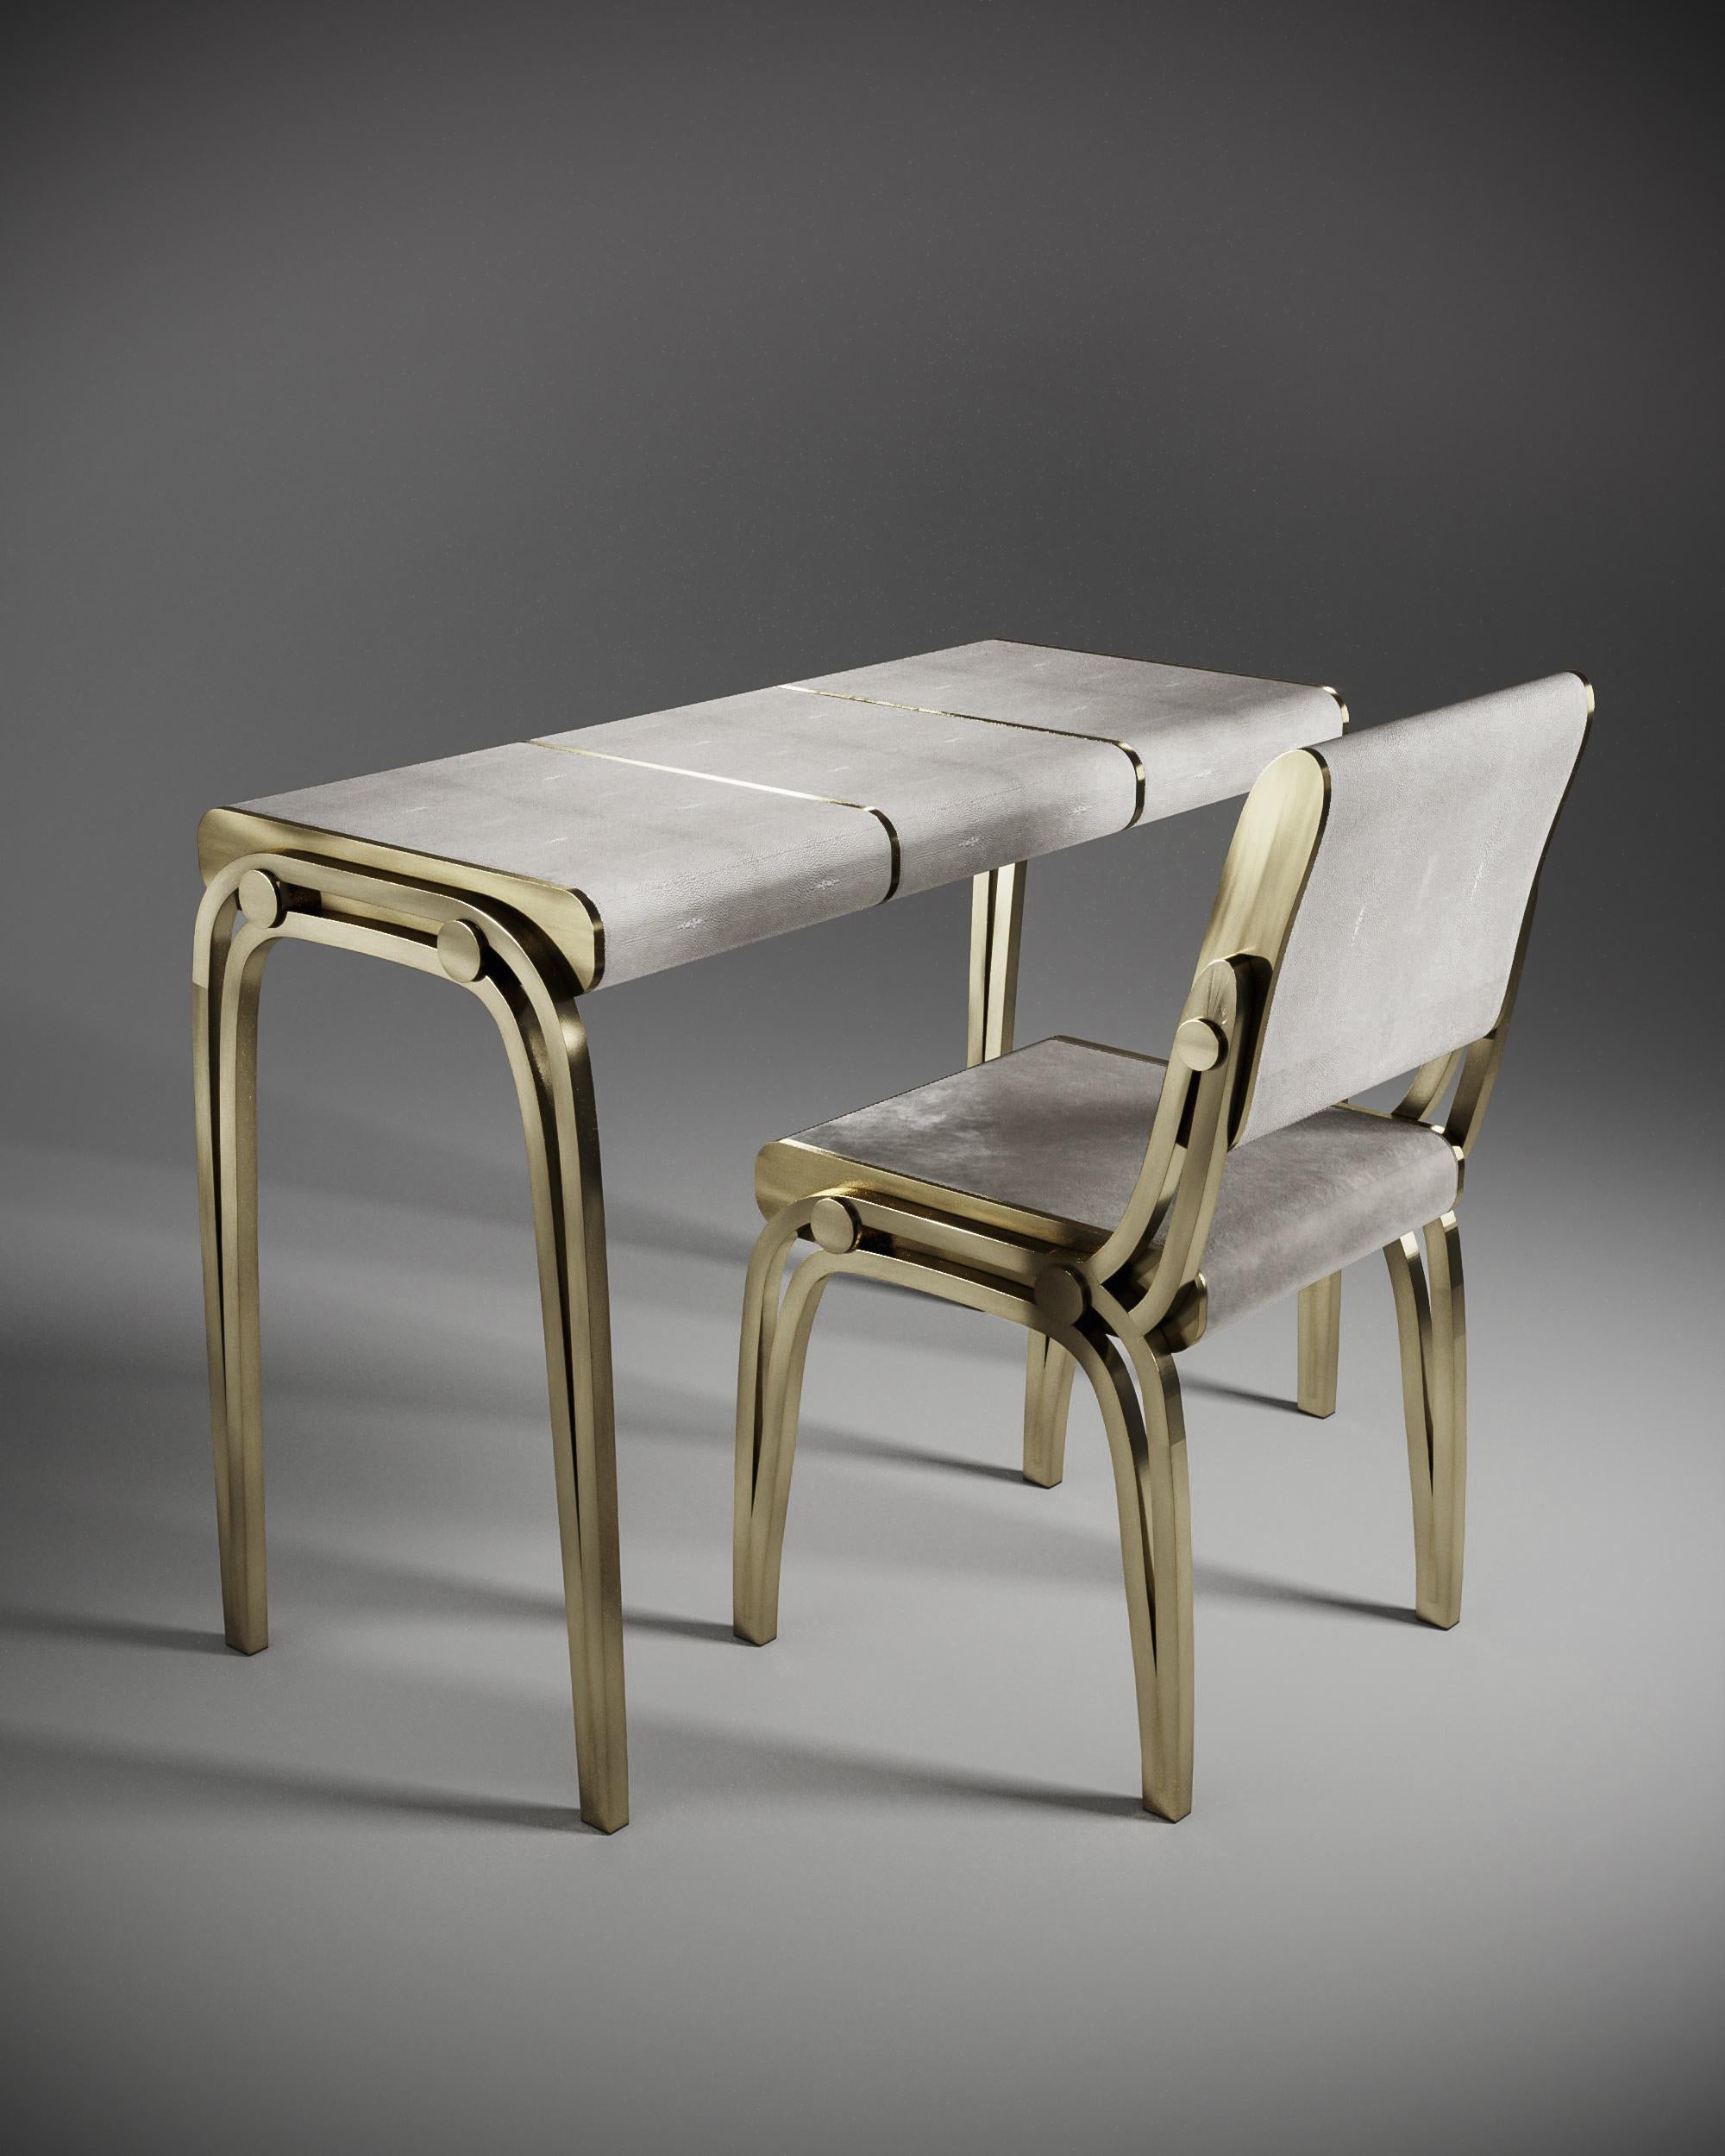 Der Schreibtisch Victoria mit cremefarbener Chagrineinlage von R&Y Augousti ist ein raffiniertes, minimalistisches Möbelstück, das mit seinen verschlungenen Messingdetails eine elegante und luxuriöse Ästhetik schafft. Die drei abgerundeten